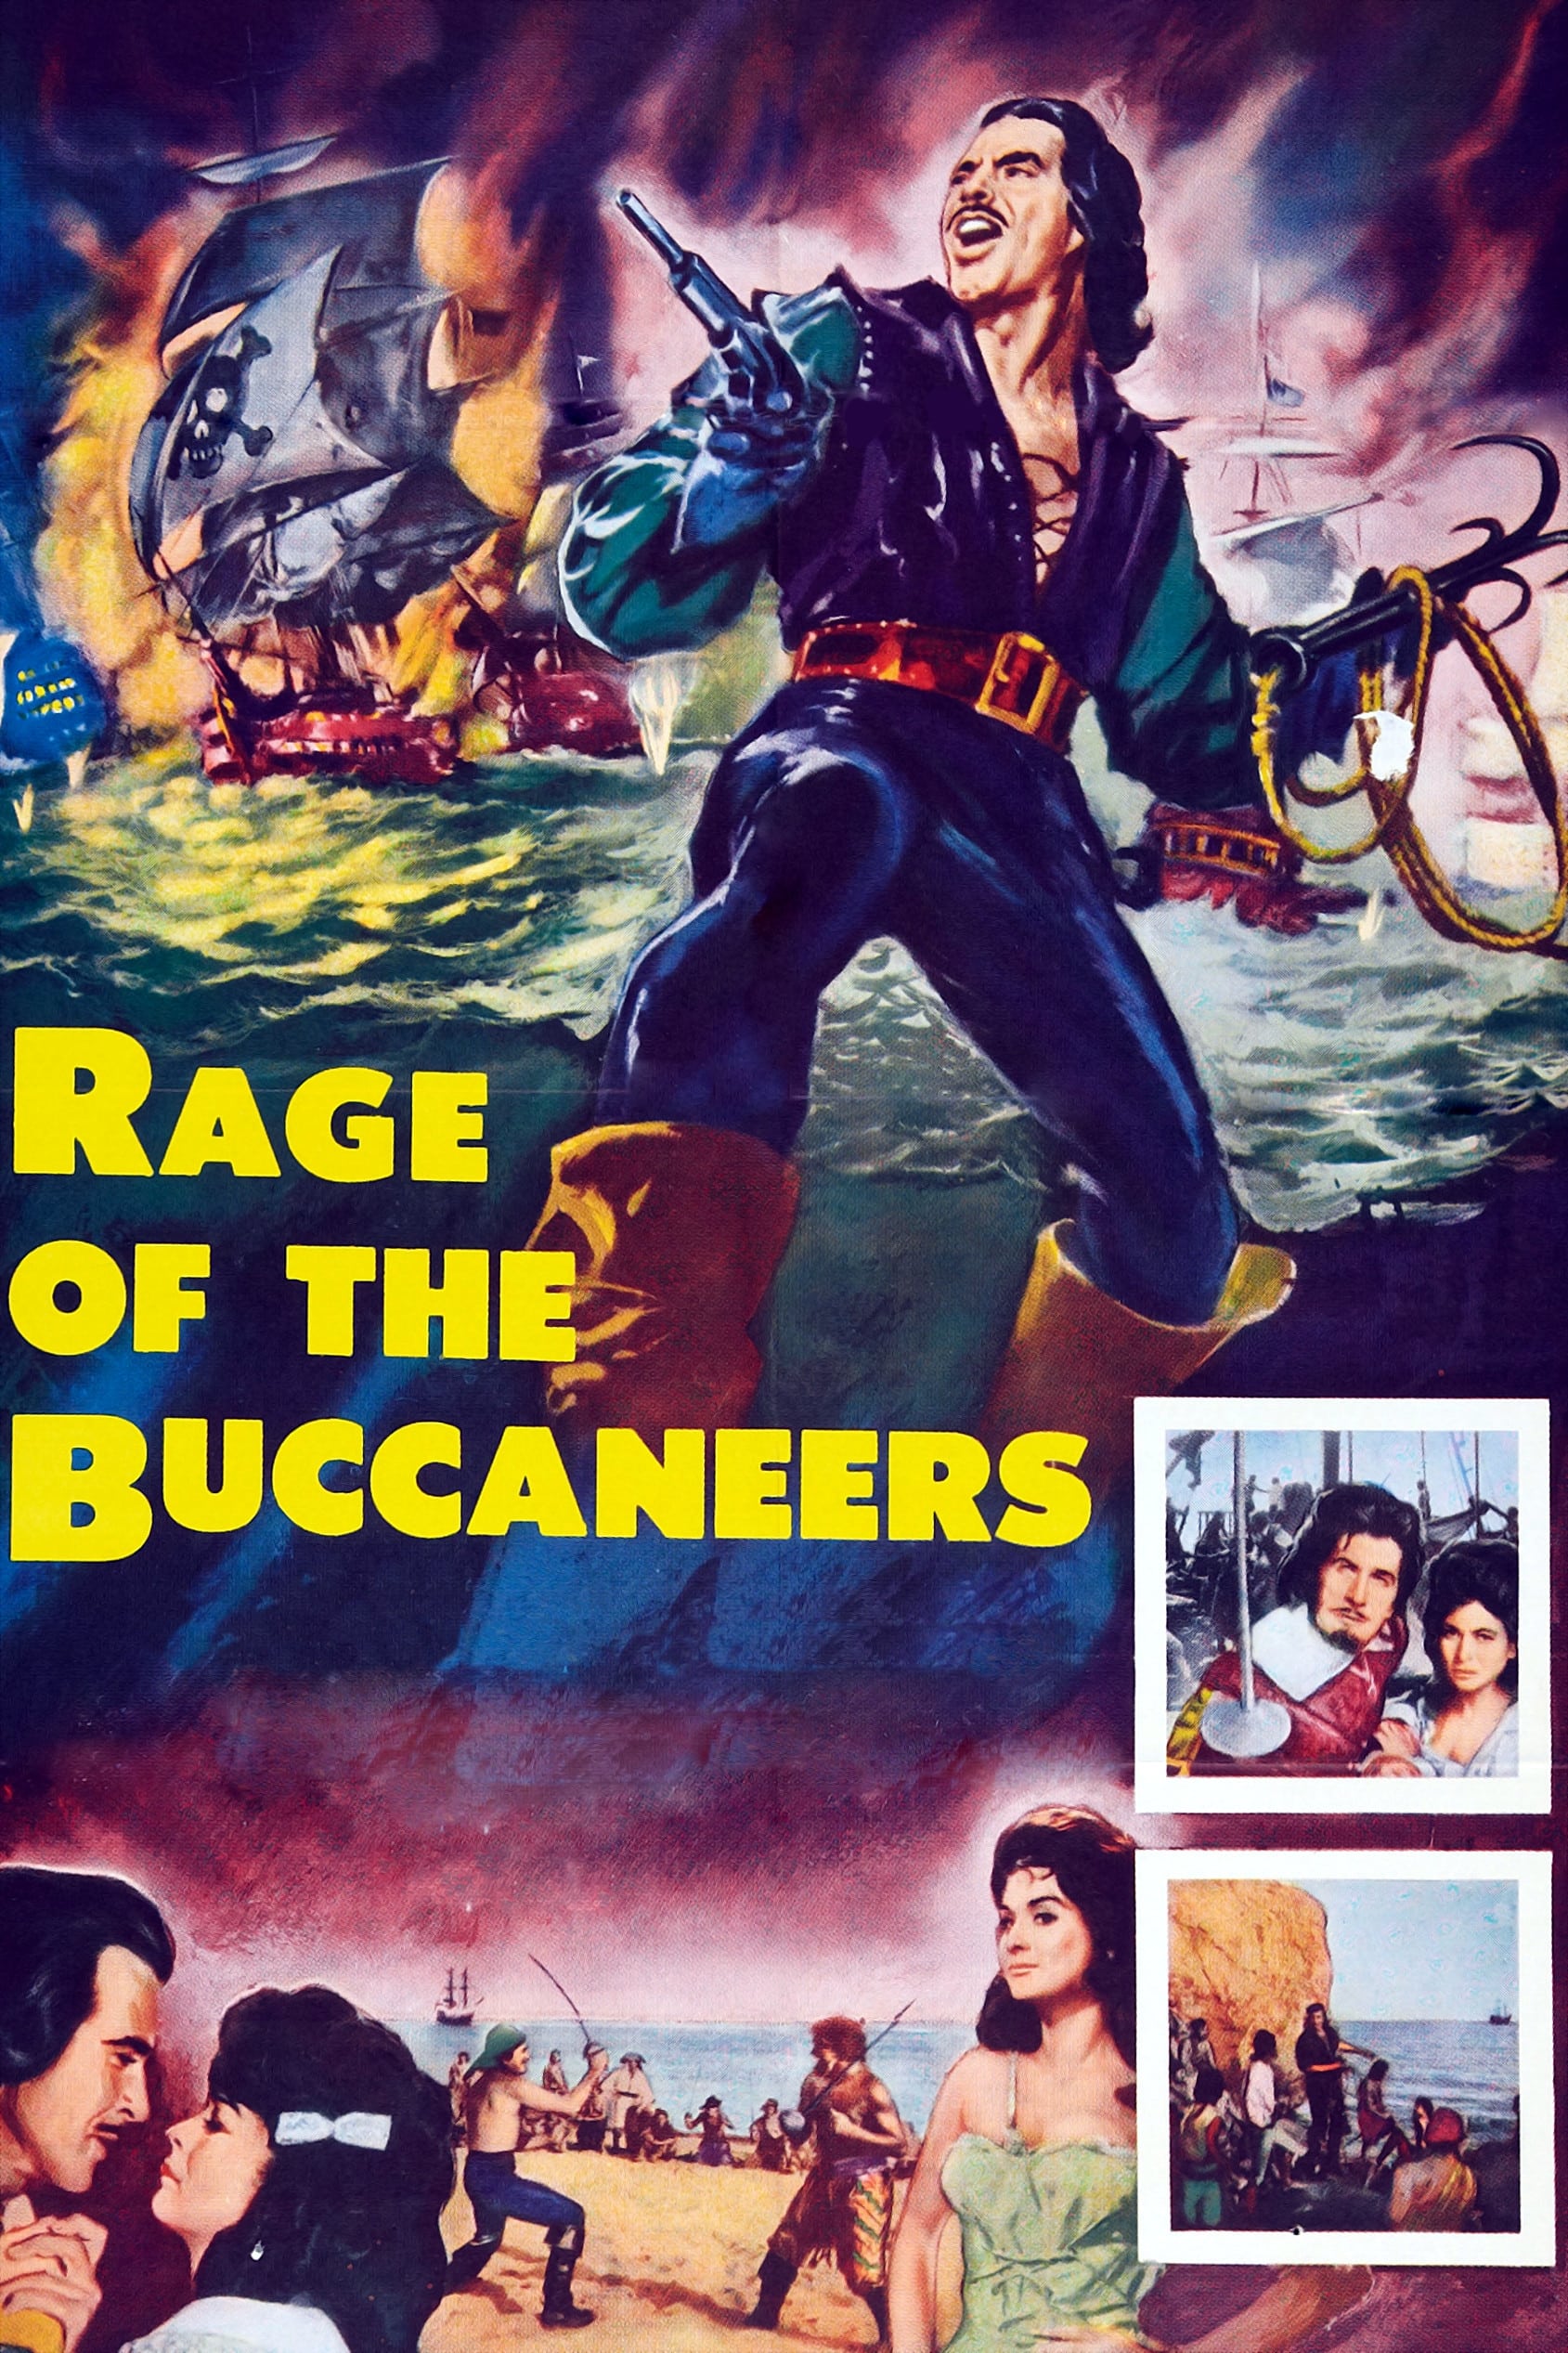 Rage of the Buccaneers (1961)